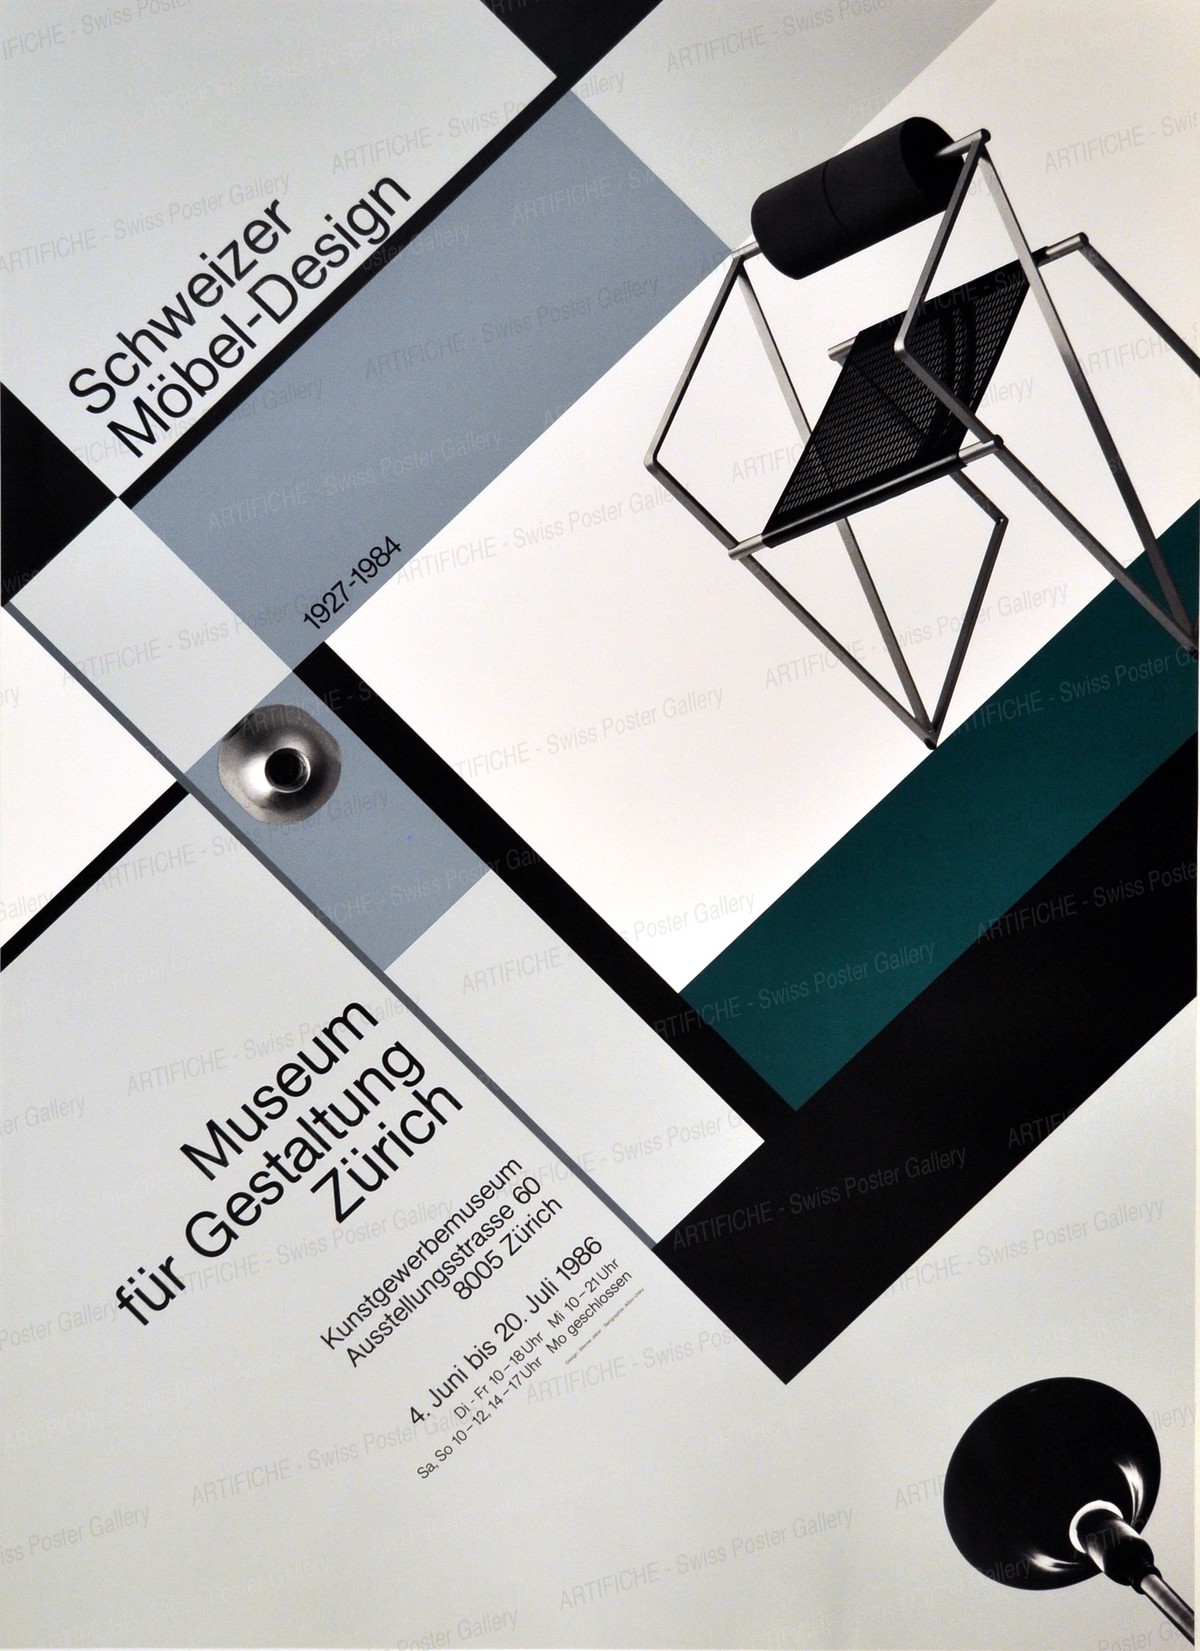 Zurich Museum of Design – Swiss Furniture Design, Werner Jeker